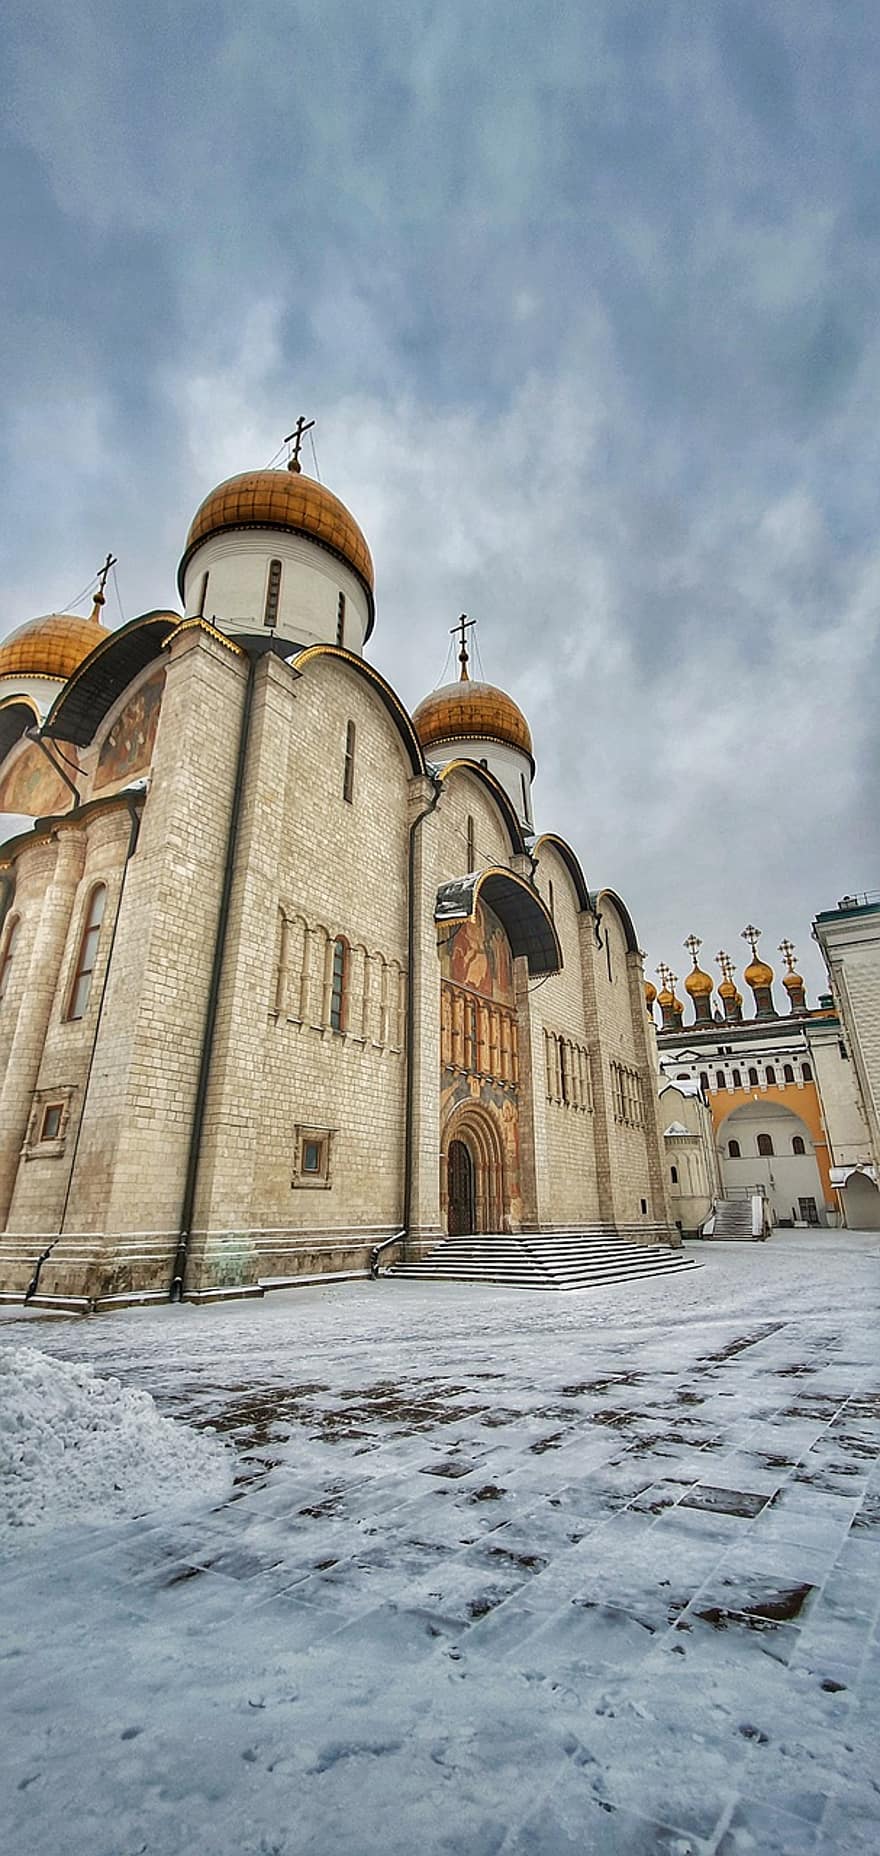 كنيسة ، بناء ، موسكو ، الكرملين ، روسيا ، قديم ، هندسة معمارية ، النصرانية ، دين ، الثقافات ، مكان مشهور